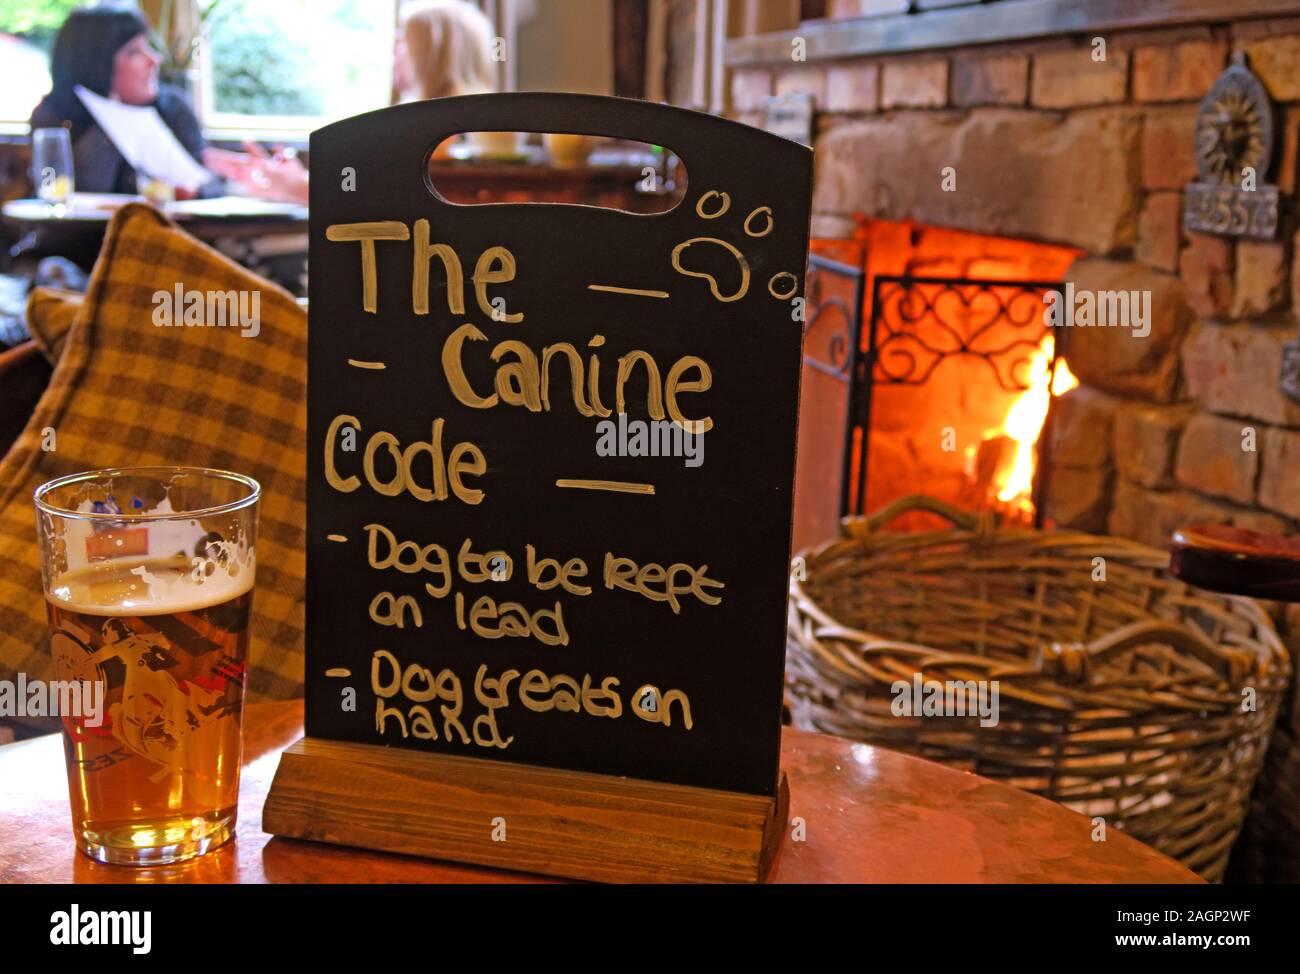 Pubs acceptant les chiens, le Code canin, chien à garder en tête, friandises pour chiens à disposition, Cheshire, Angleterre, Royaume-Uni Banque D'Images